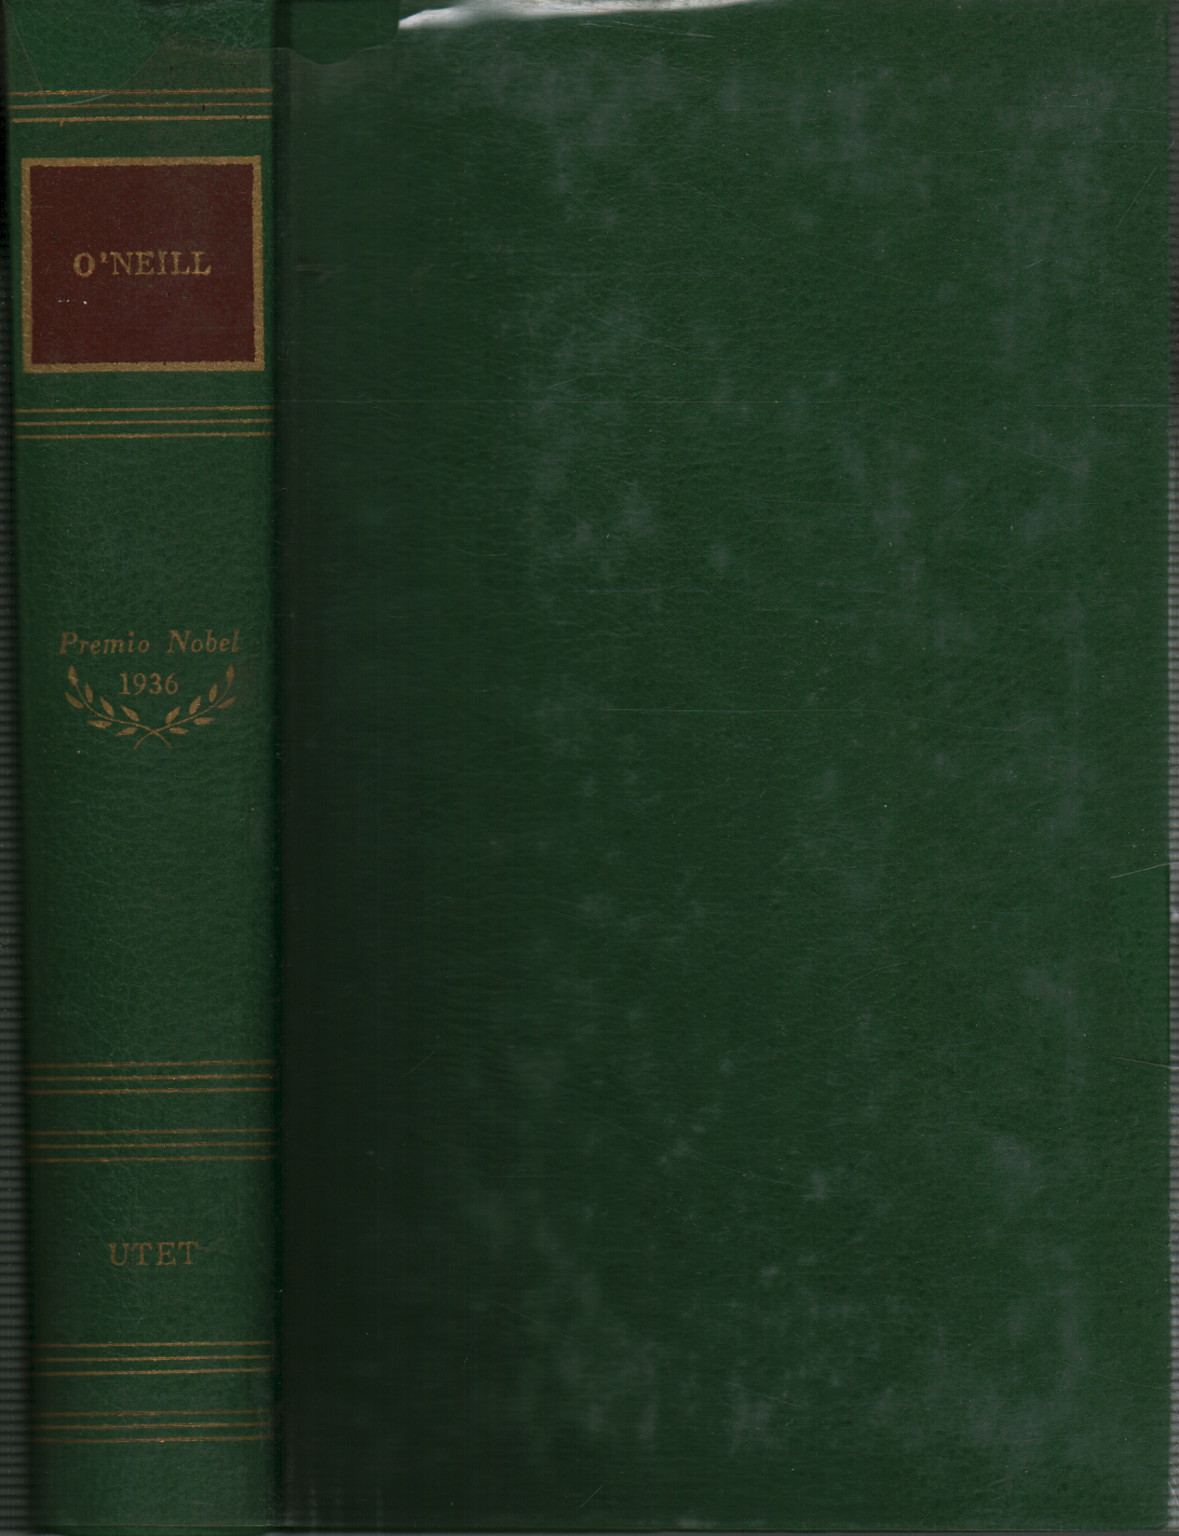 Las obras de Eugene O'Neill, s.a.